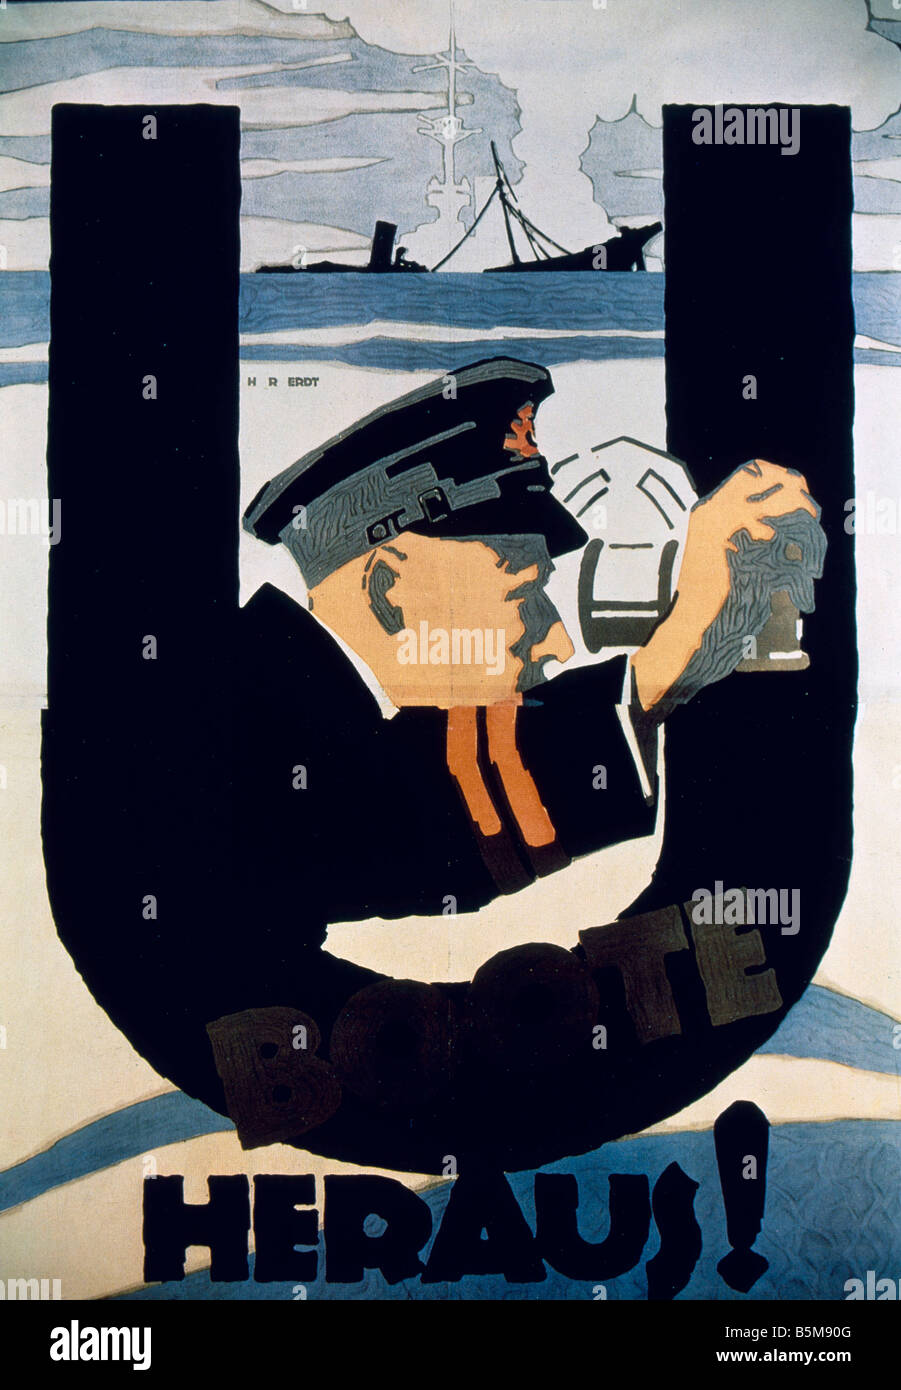 2 G55 M1 1914 7 e sous-marins de l'AFFICHE DE LA PREMIÈRE GUERRE MONDIALE 1914 8 Histoire La Première Guerre mondiale La guerre sur mer U Boote Heraus hors Allemagne 1914 affiche les sous-marins Banque D'Images